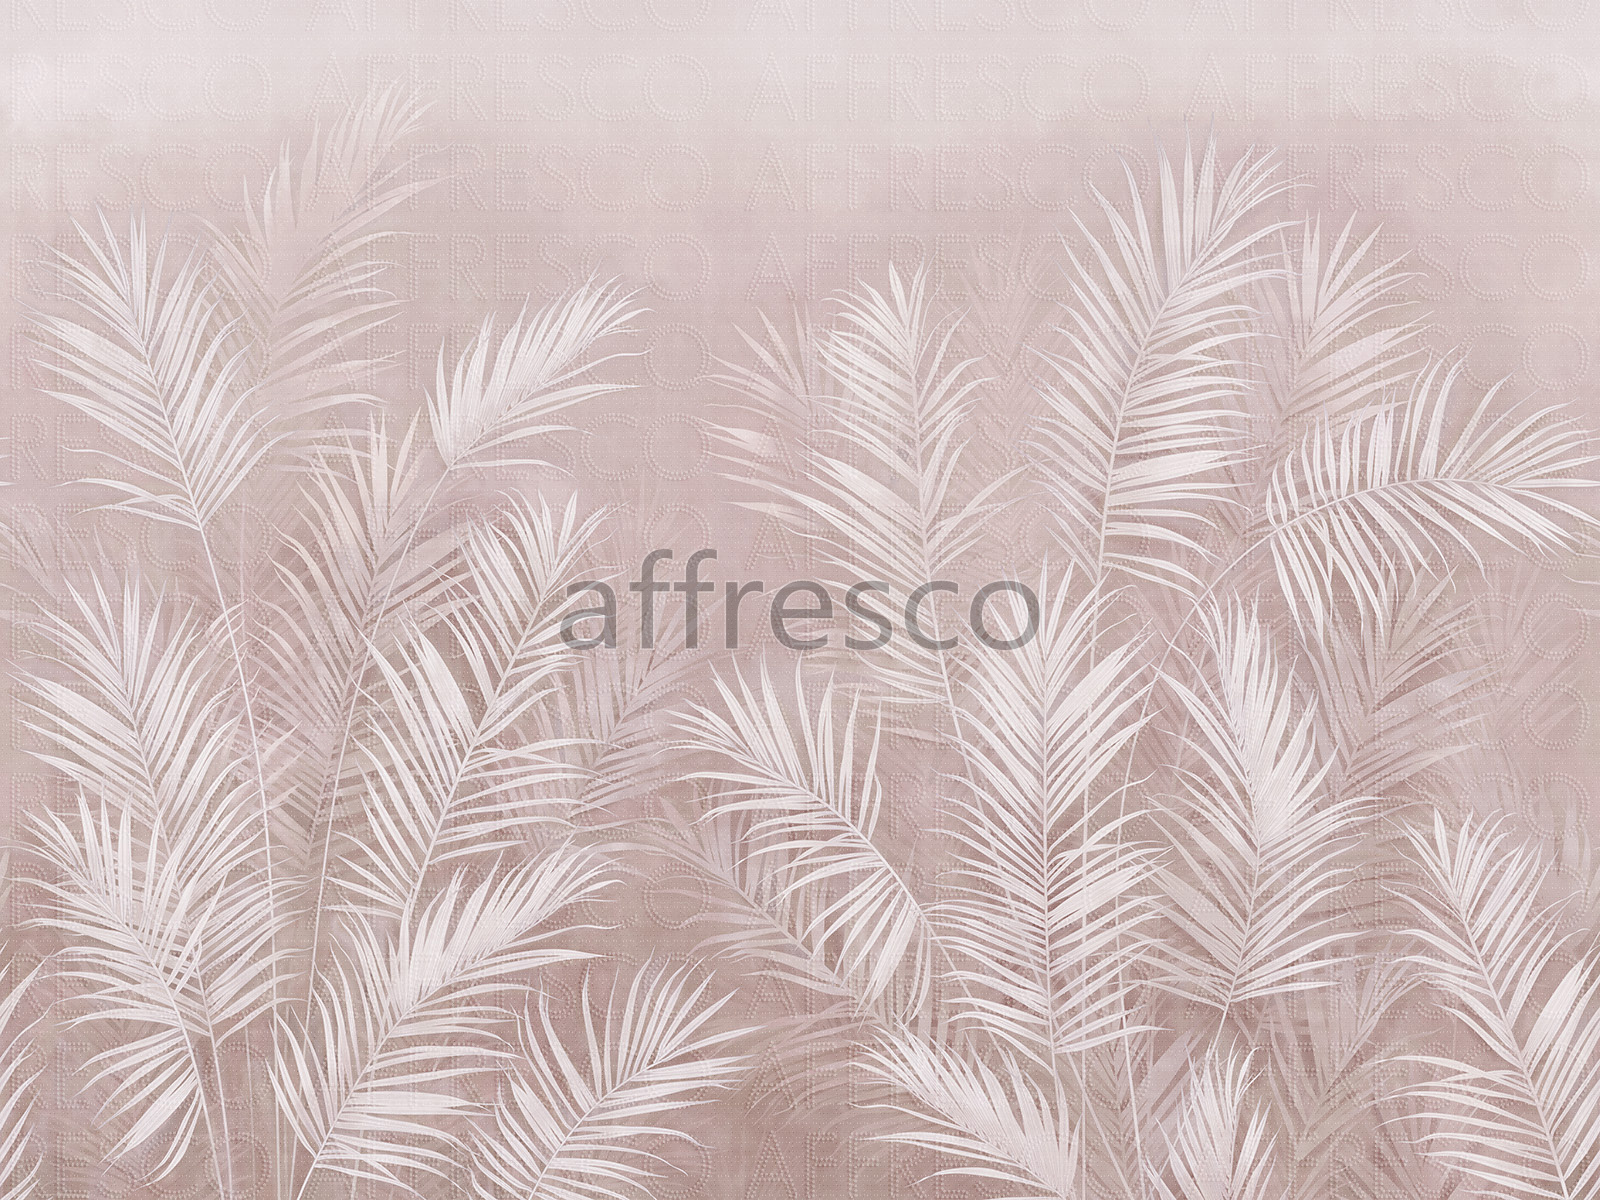 AF2114-COL2 | Line Art | Affresco Factory